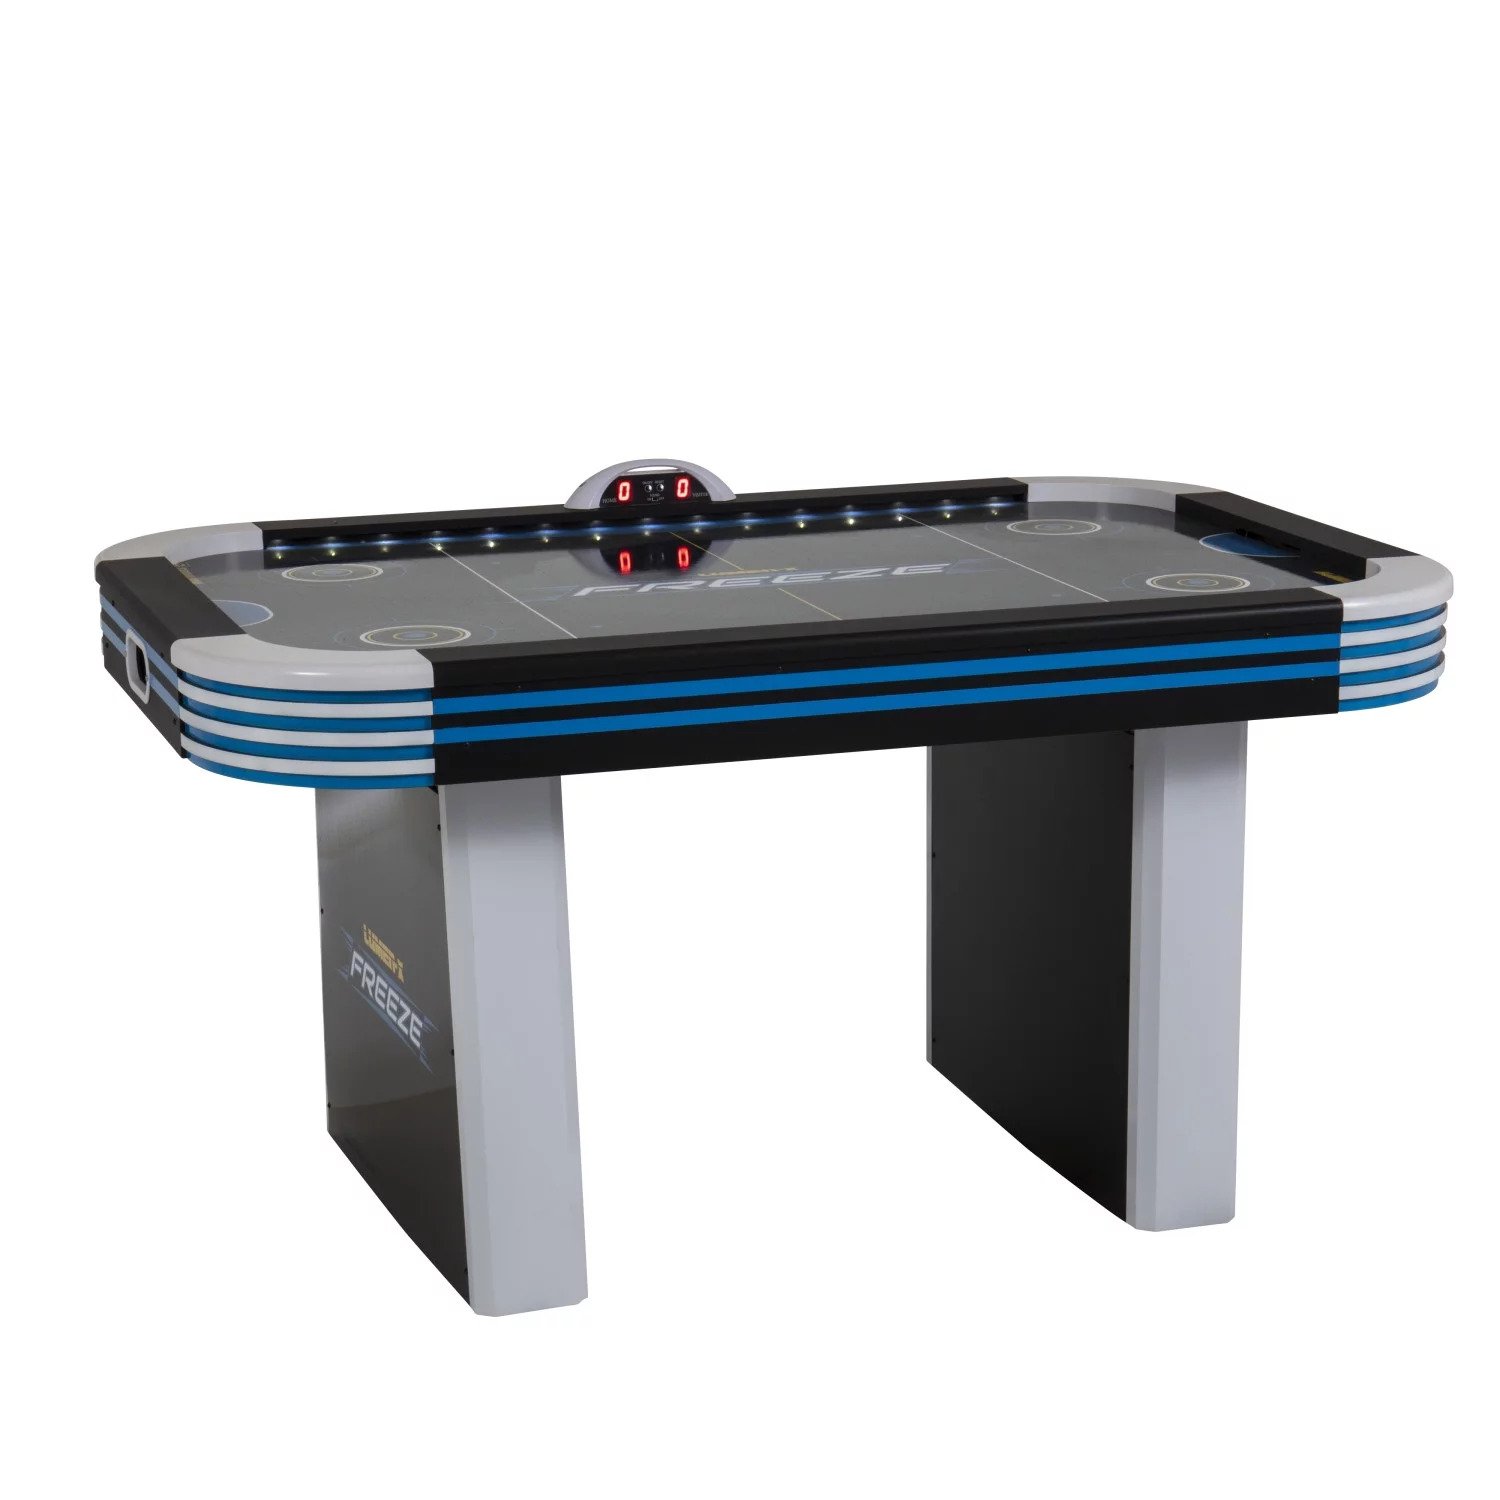 Triumph lumen-X lazer grey and black 6' air hockey table